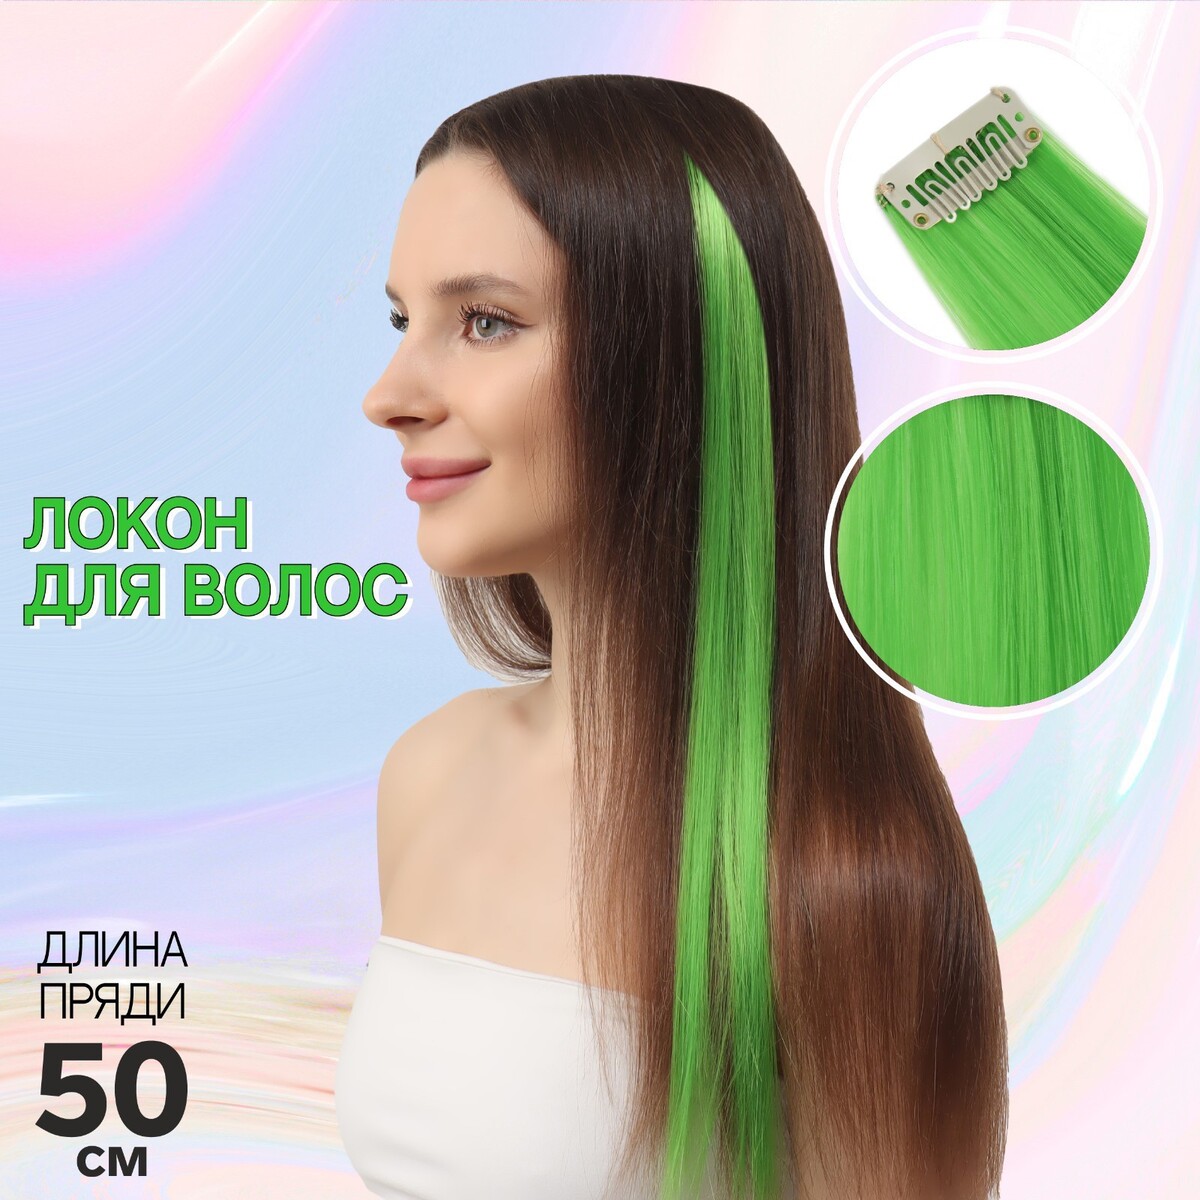 Локон накладной, прямой волос, на заколке, 50 см, 5 гр, цвет зеленый локон накладной прямой волос на заколке 50 см 5 гр каштановый